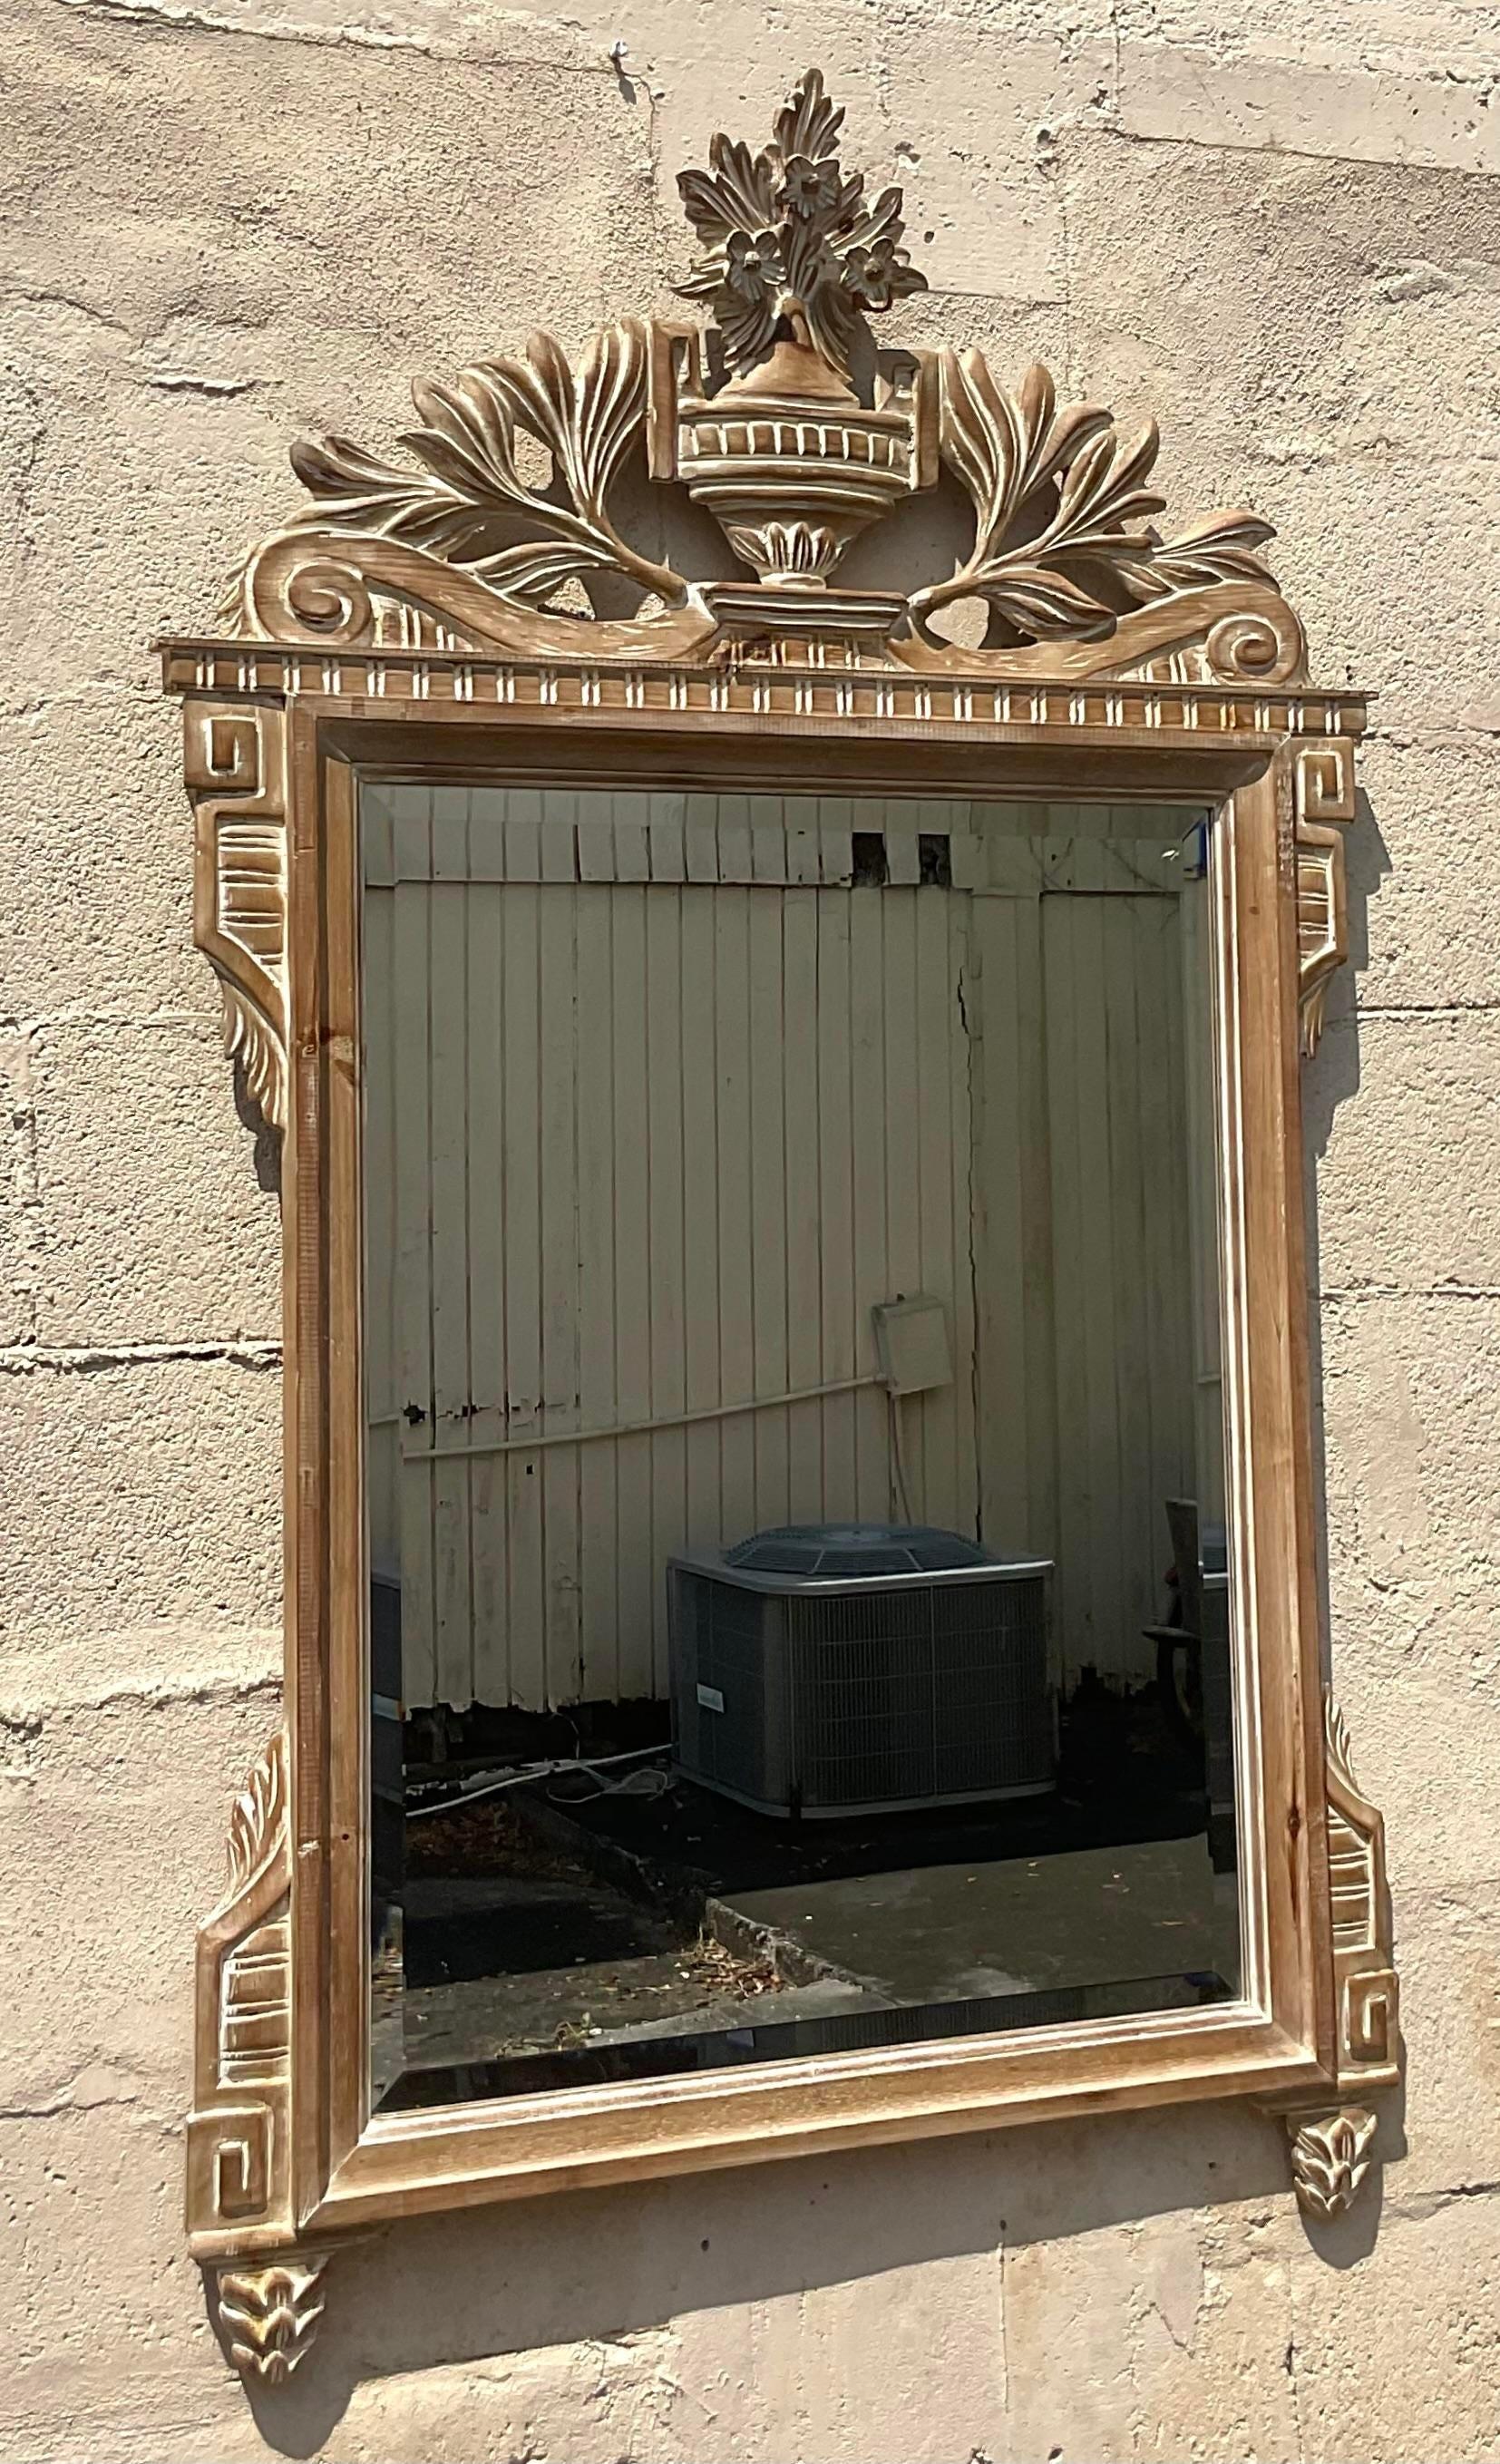 Erhöhen Sie Ihre Einrichtung mit der zeitlosen Raffinesse dieses geschnitzten italienischen Holzspiegels im Regency-Stil. Das mit viel Liebe zum Detail gefertigte, kunstvolle Design und die reiche Holzoberfläche strahlen klassischen amerikanischen